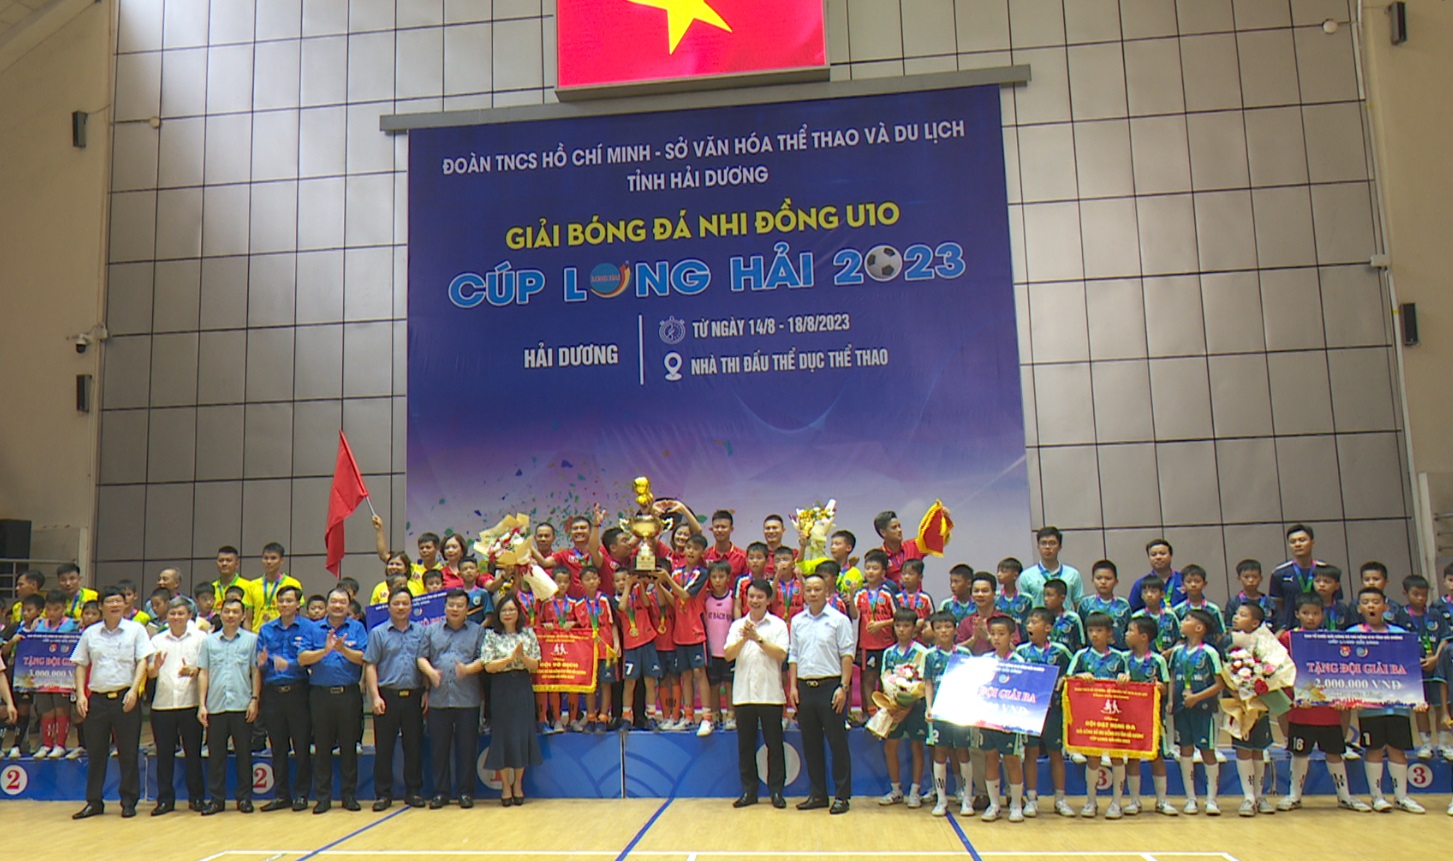 Bế mạc Giải bóng đá nhi đồng U10 tỉnh Hải Dương